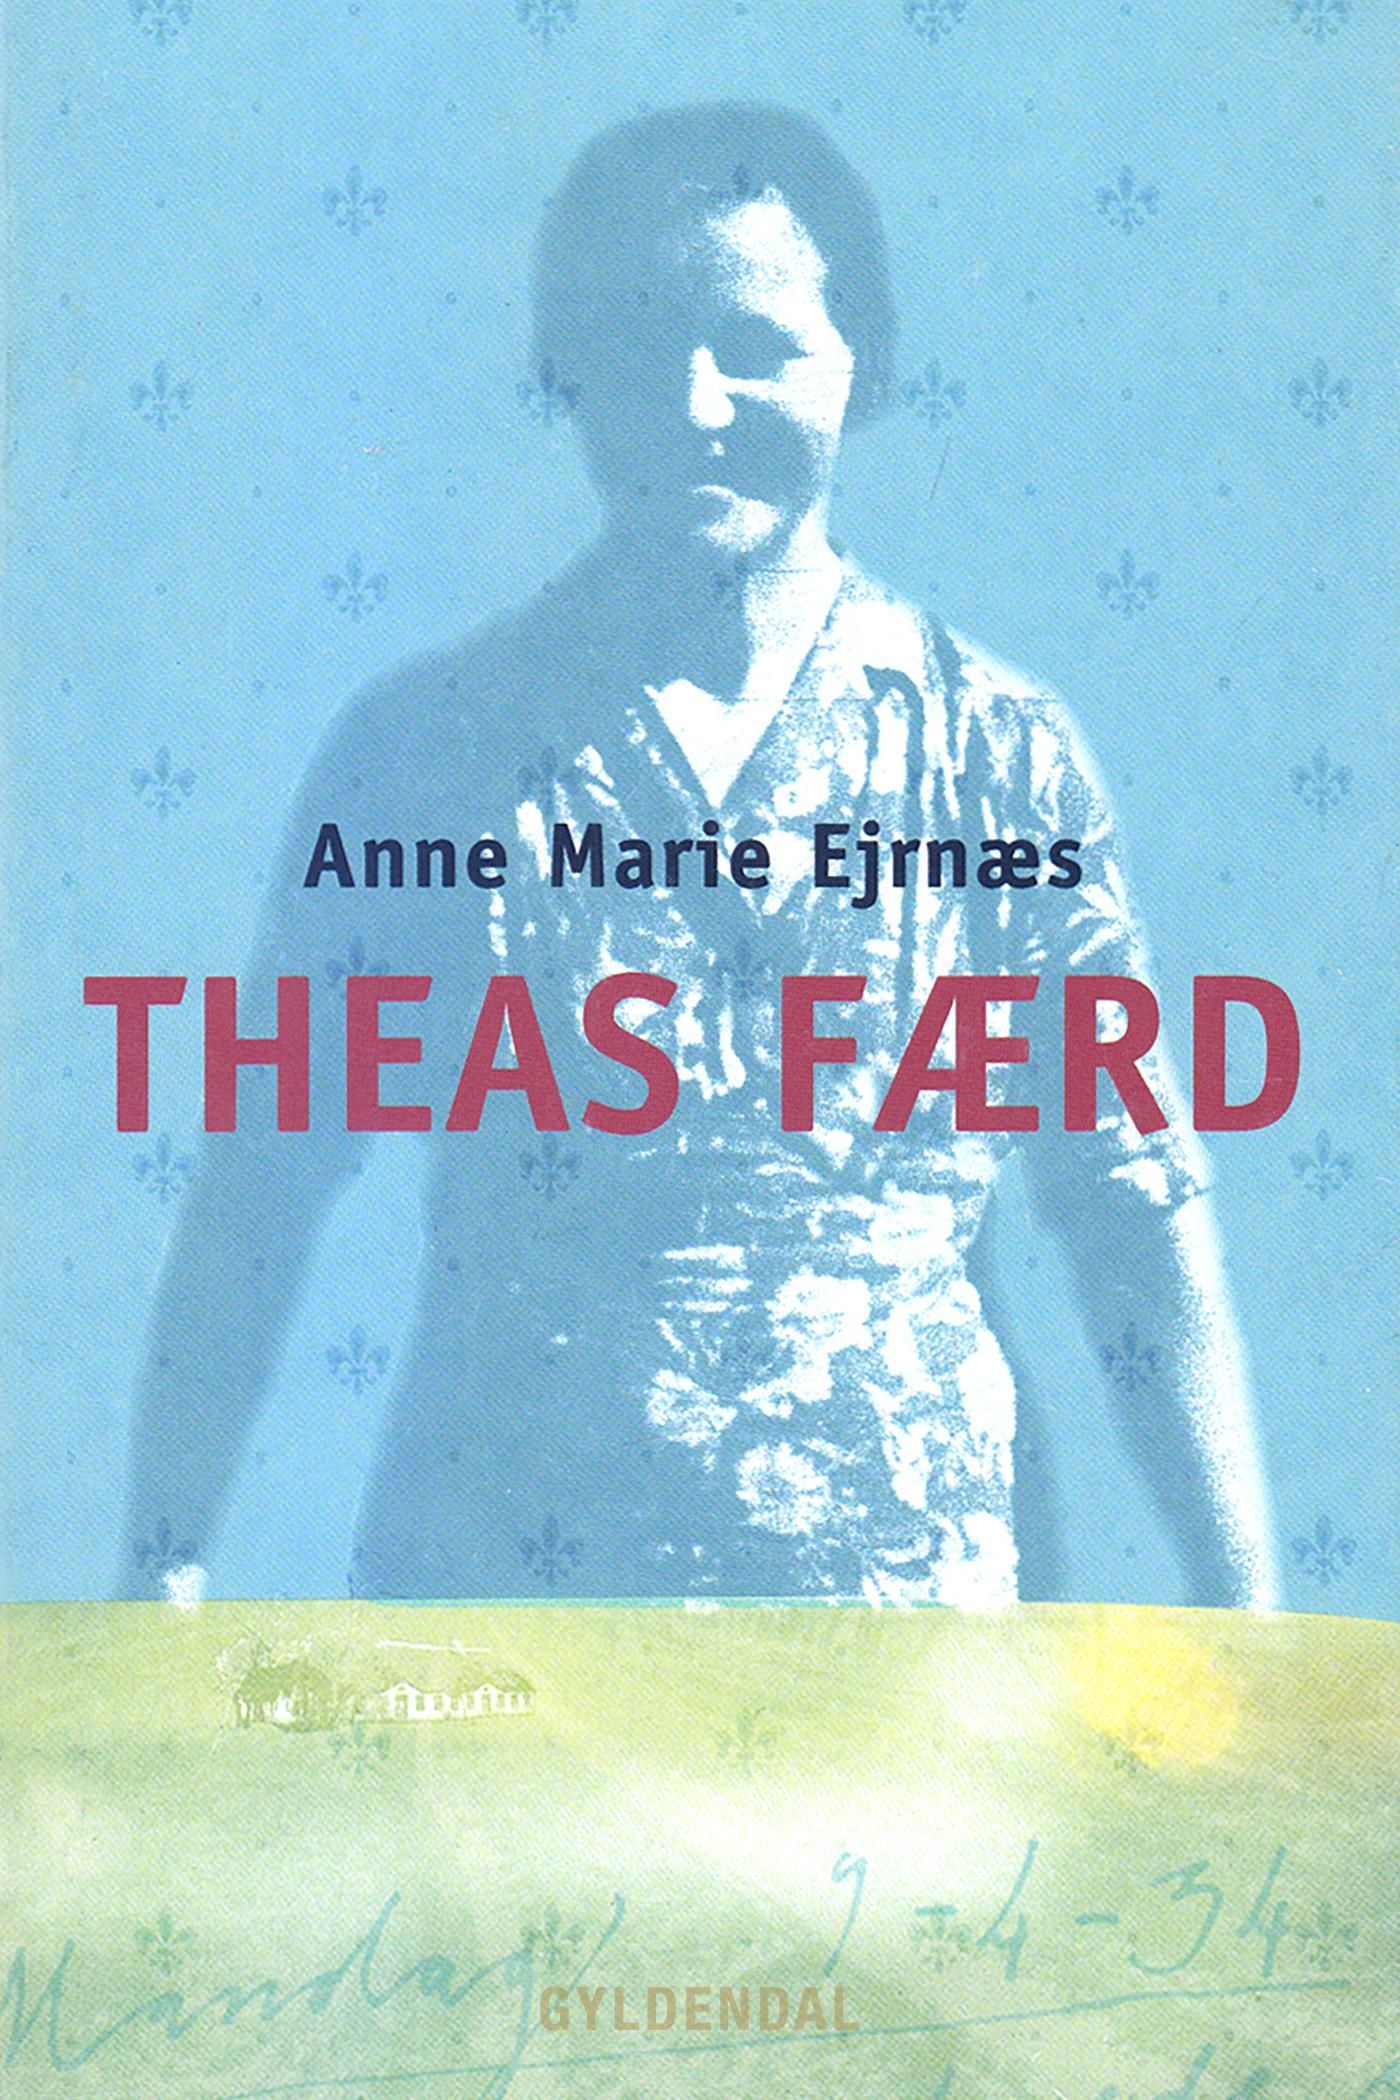 Theas færd, e-bok av Anne Marie Ejrnæs